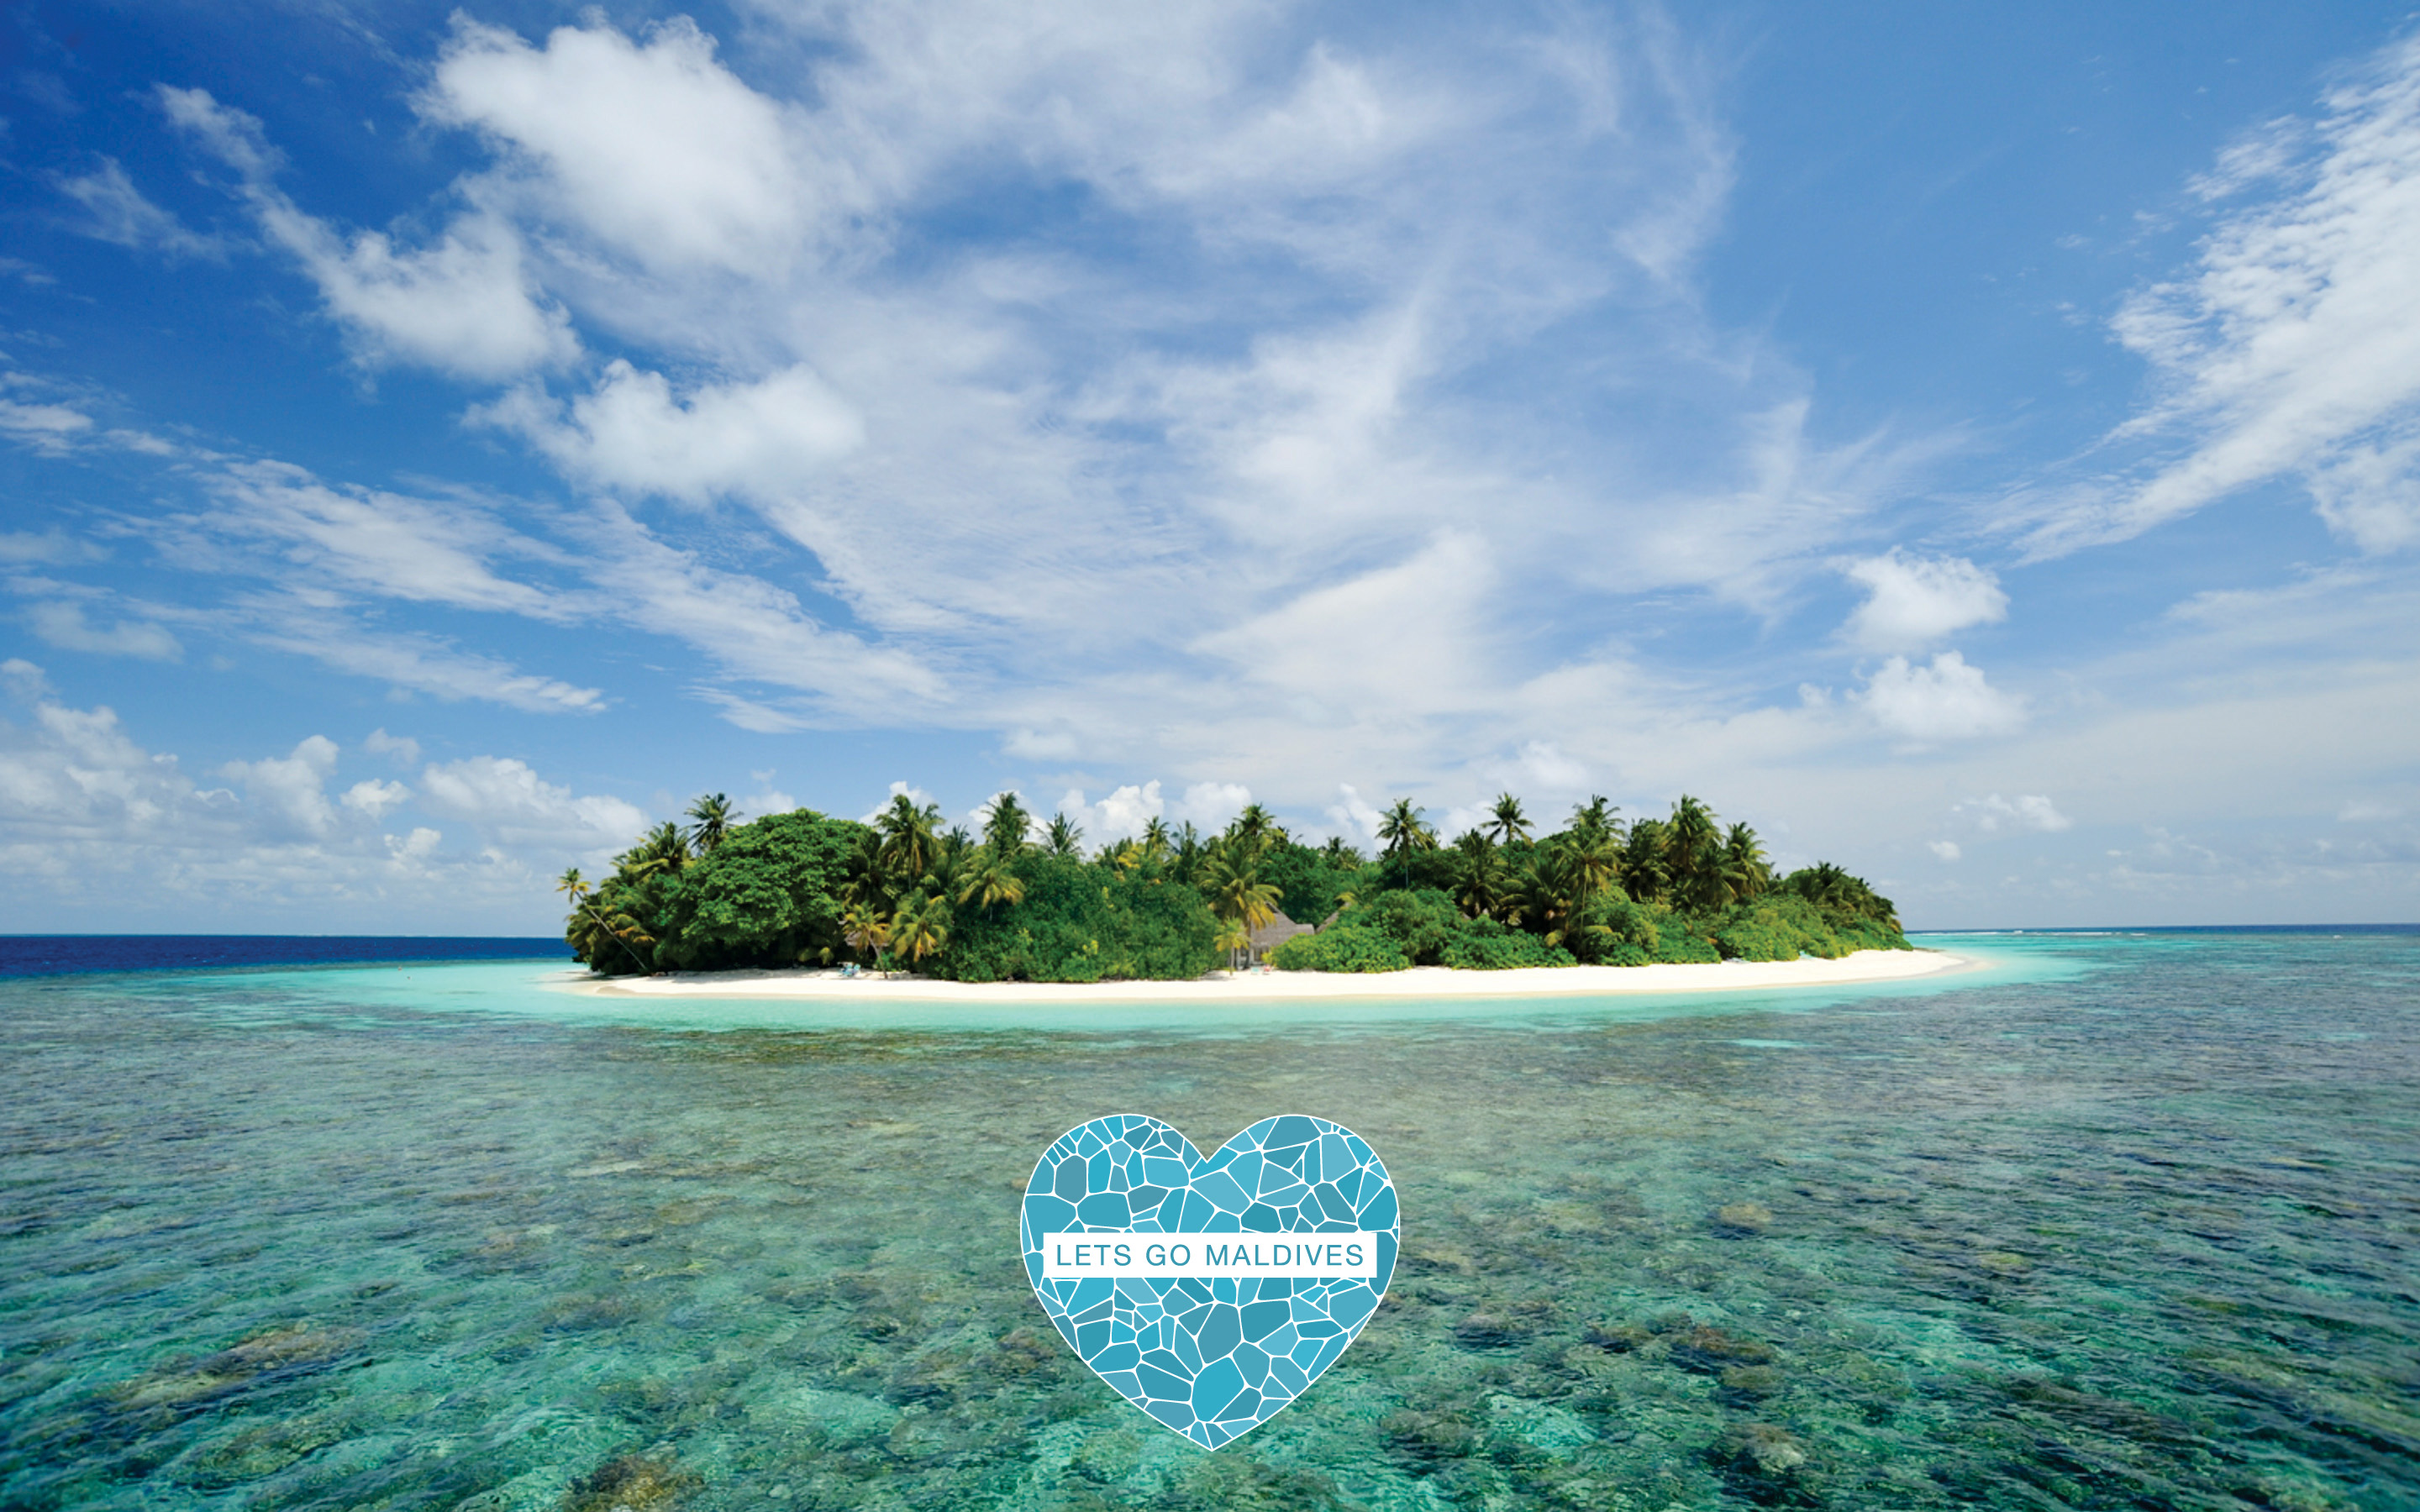 Lets Go Maldives Desktop Wallpaper - Nicaragua Desktop Backgrounds , HD Wallpaper & Backgrounds